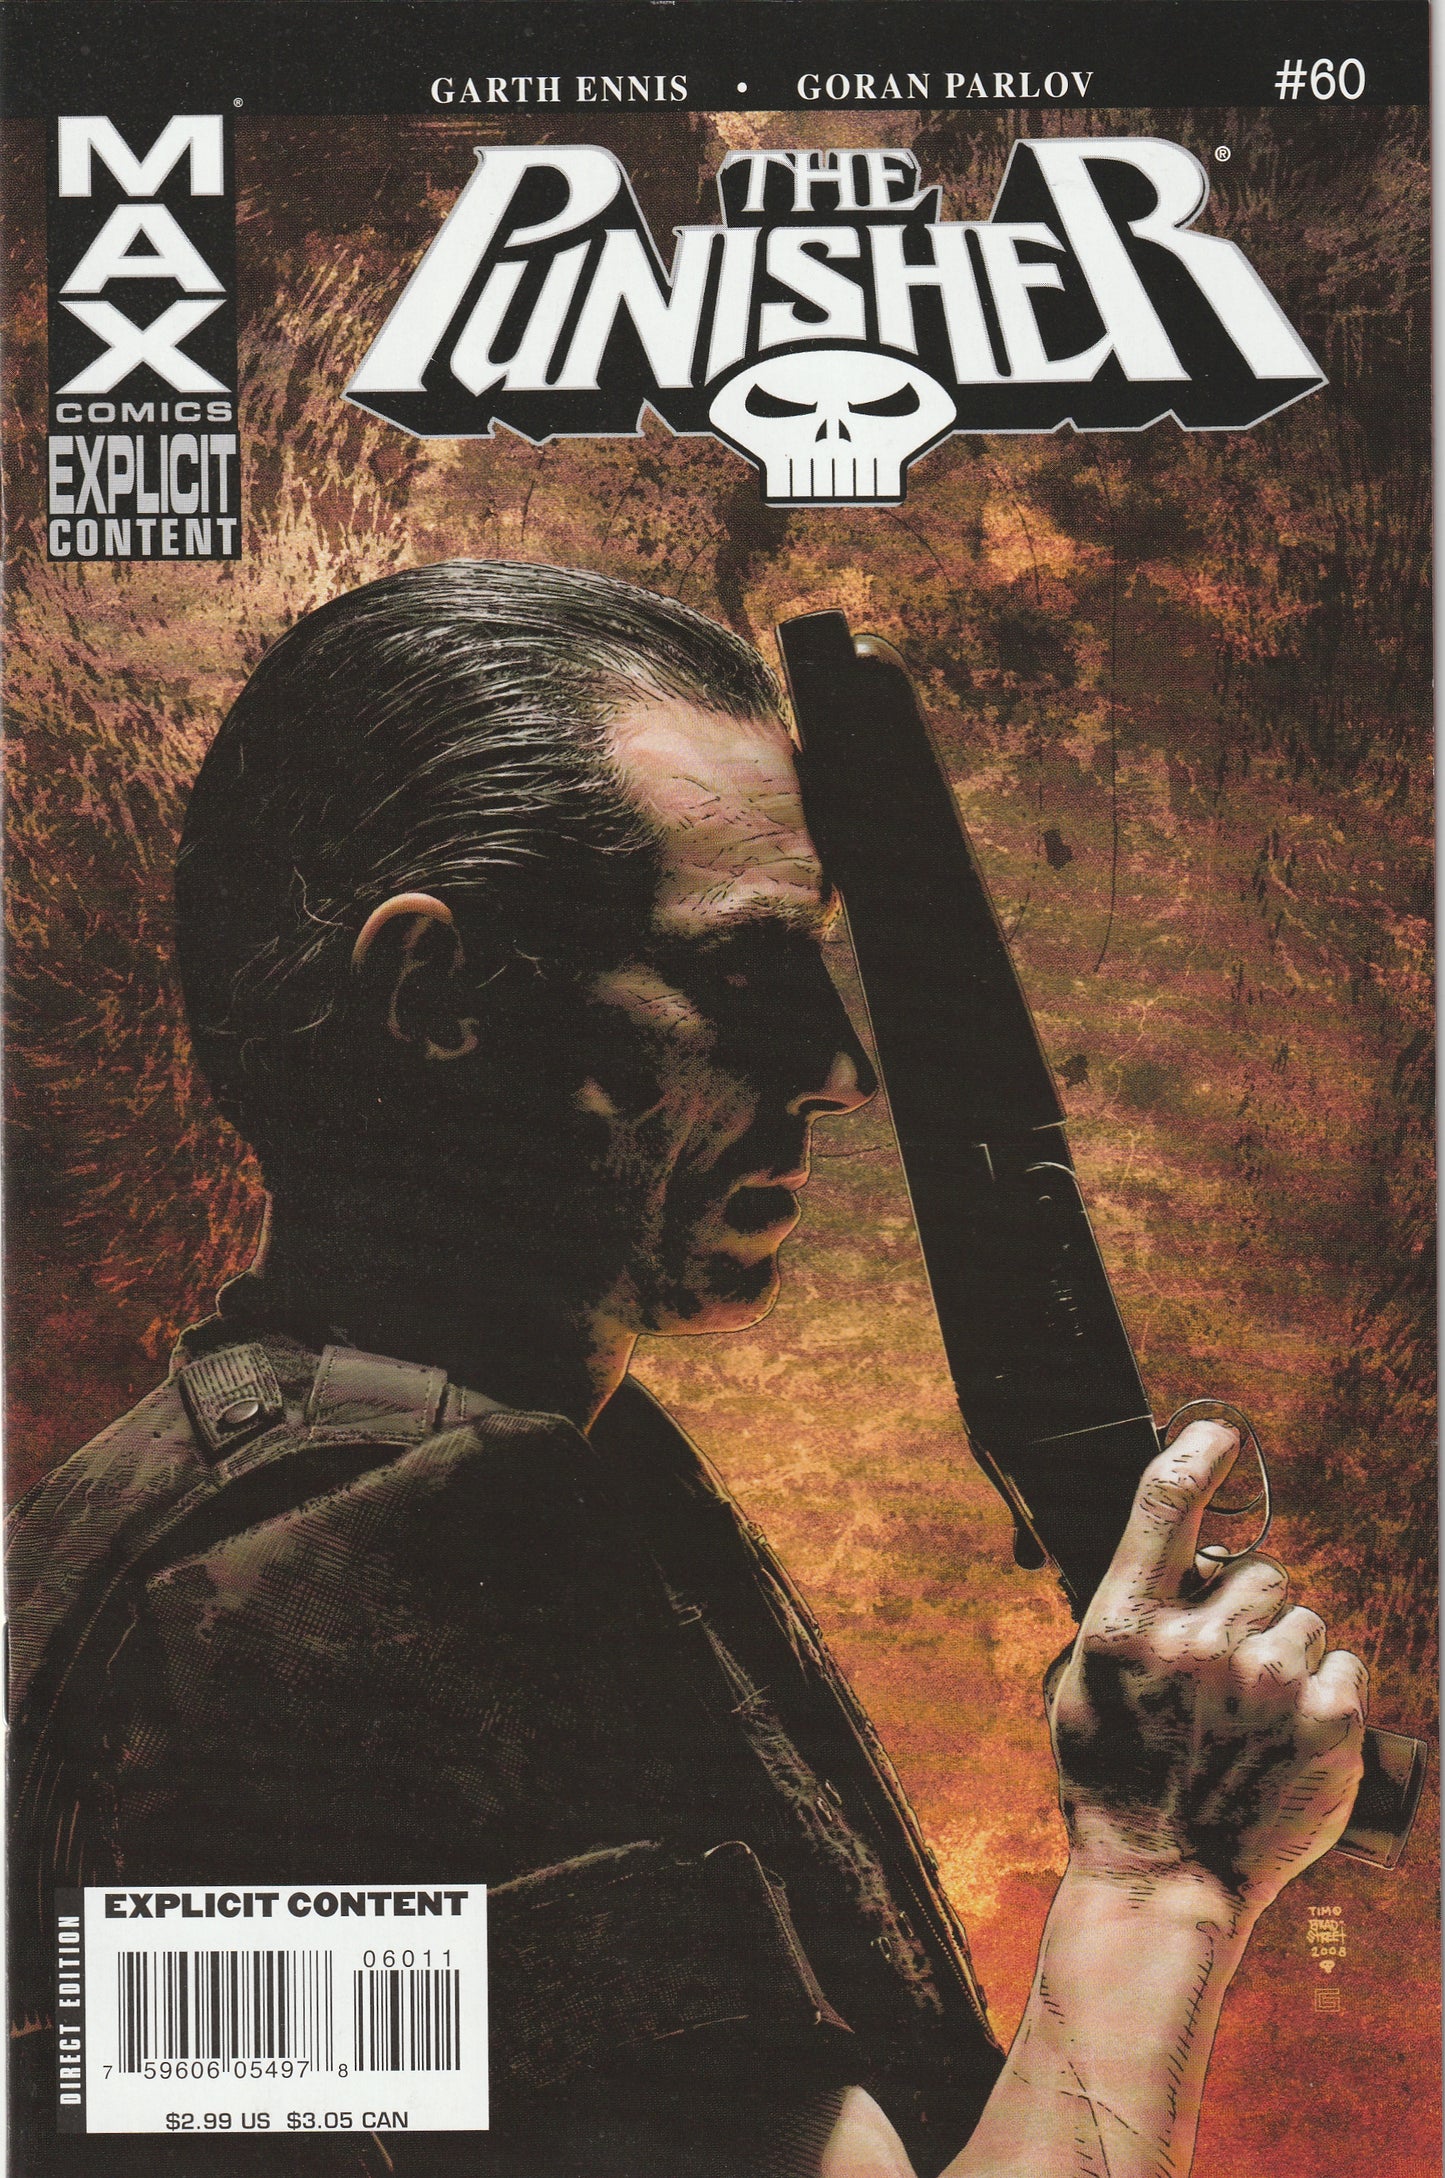 The Punisher #60 (MAX, 2008) - Garth Ennis